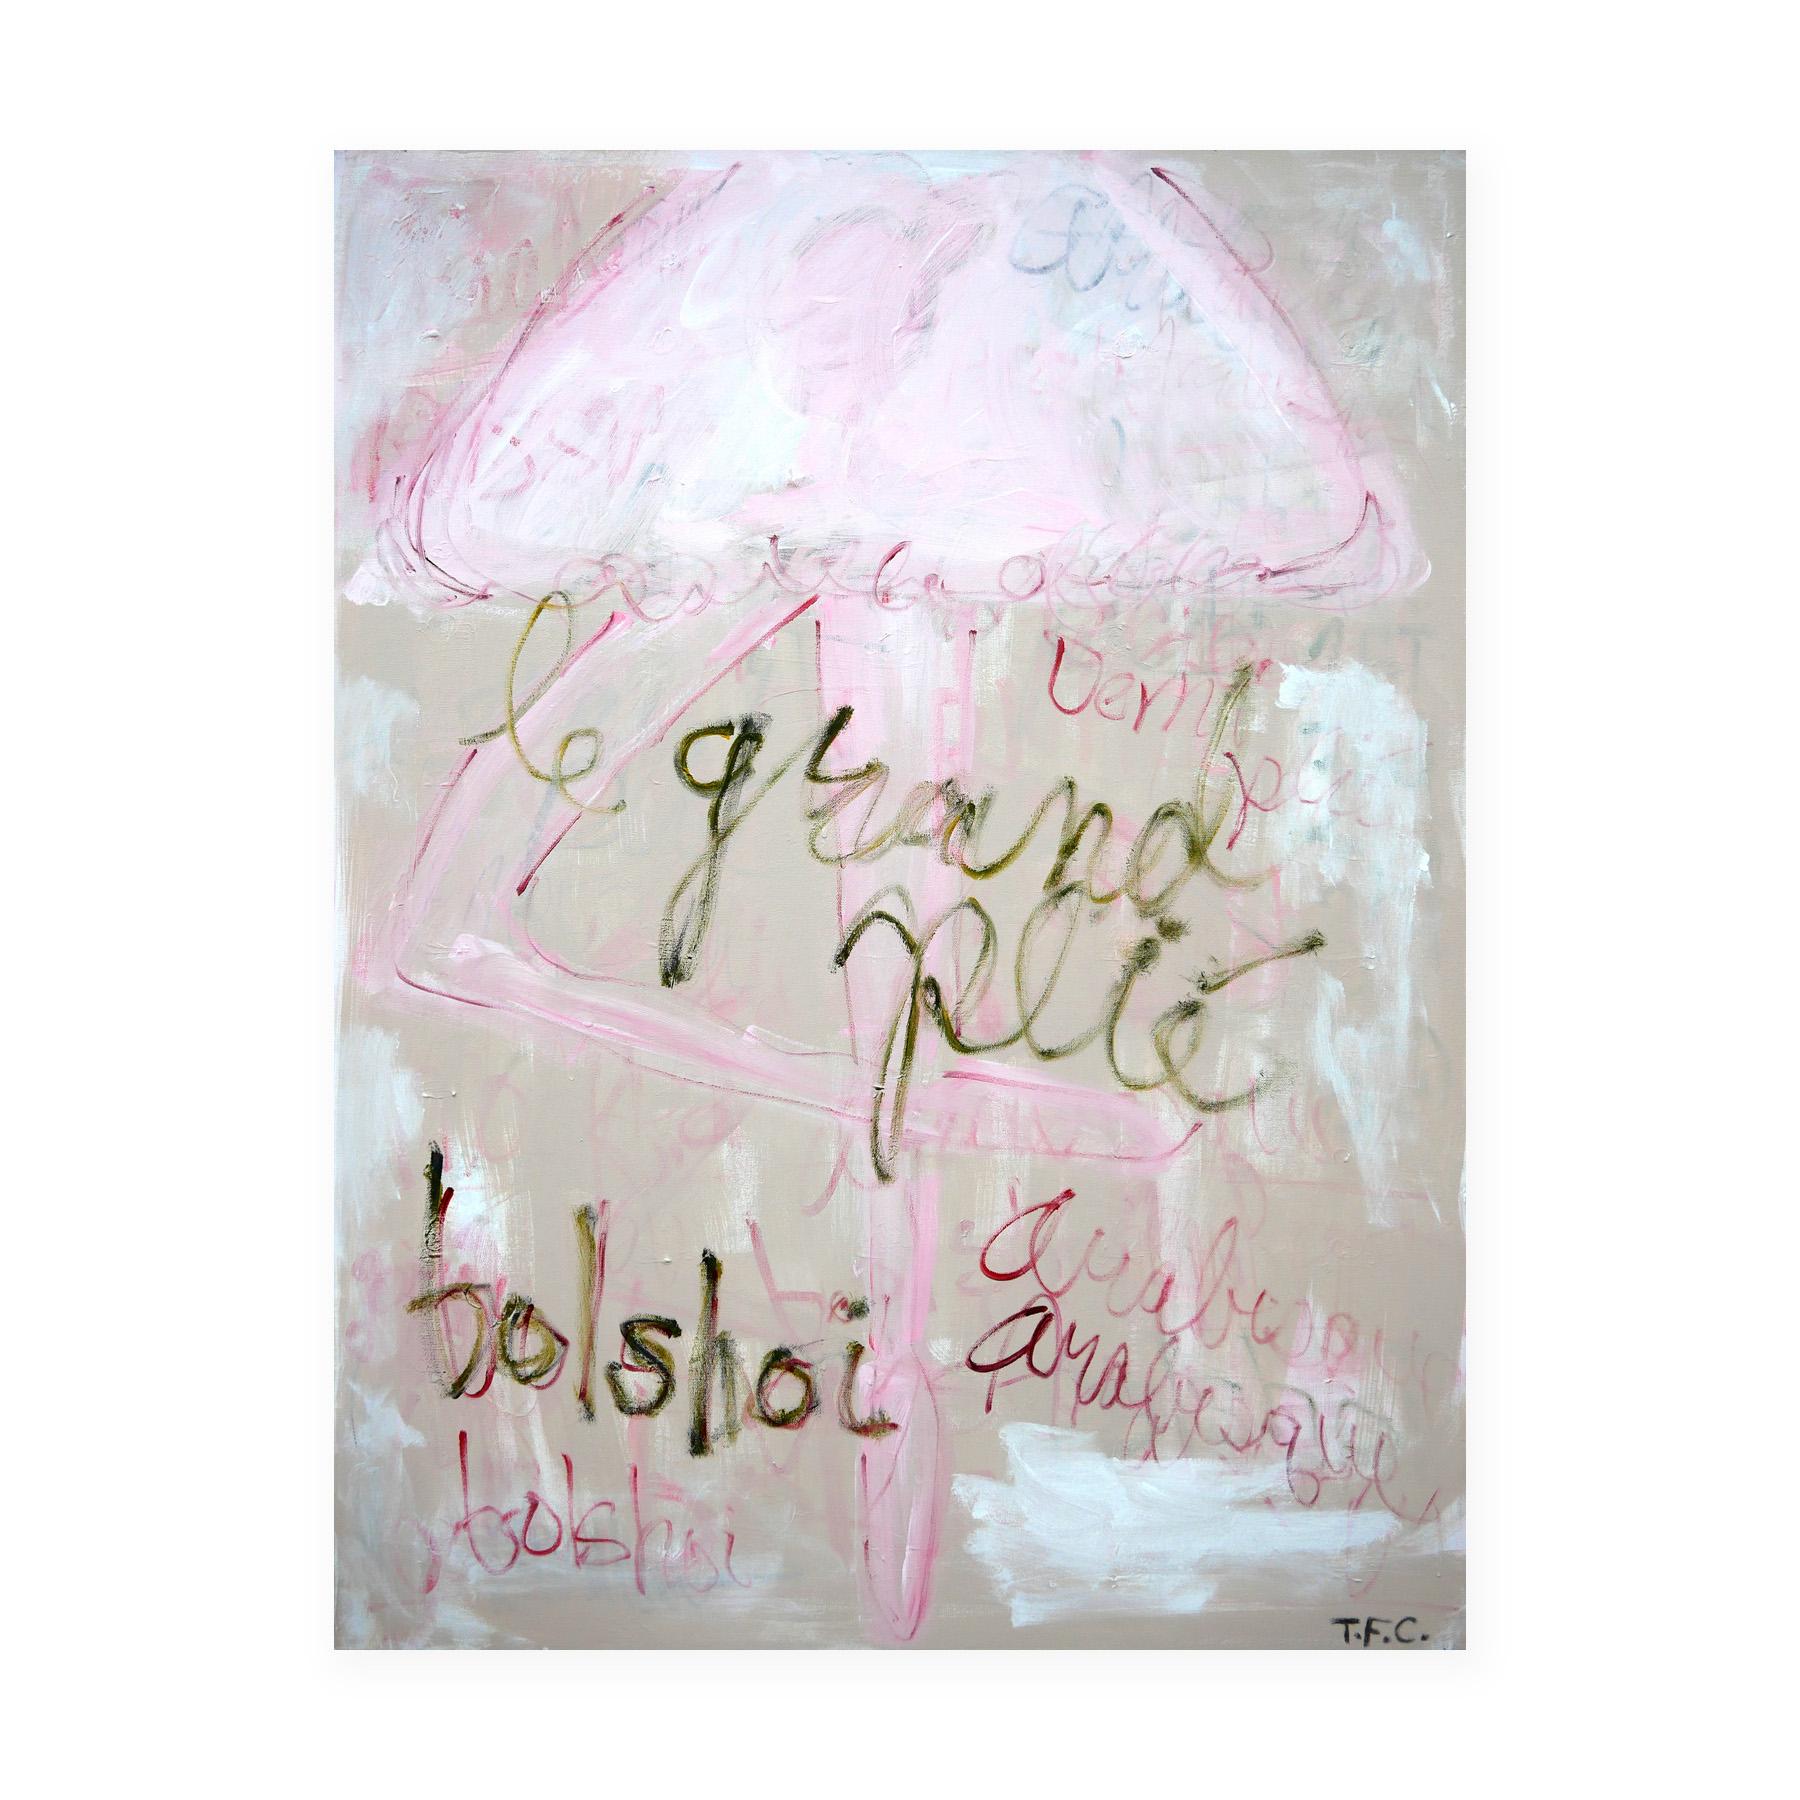 Zeitgenössisches abstraktes Pop-Art-Gemälde einer rosa Ballerina, Bolshoi-Ballerina  – Painting von Tyler Casey